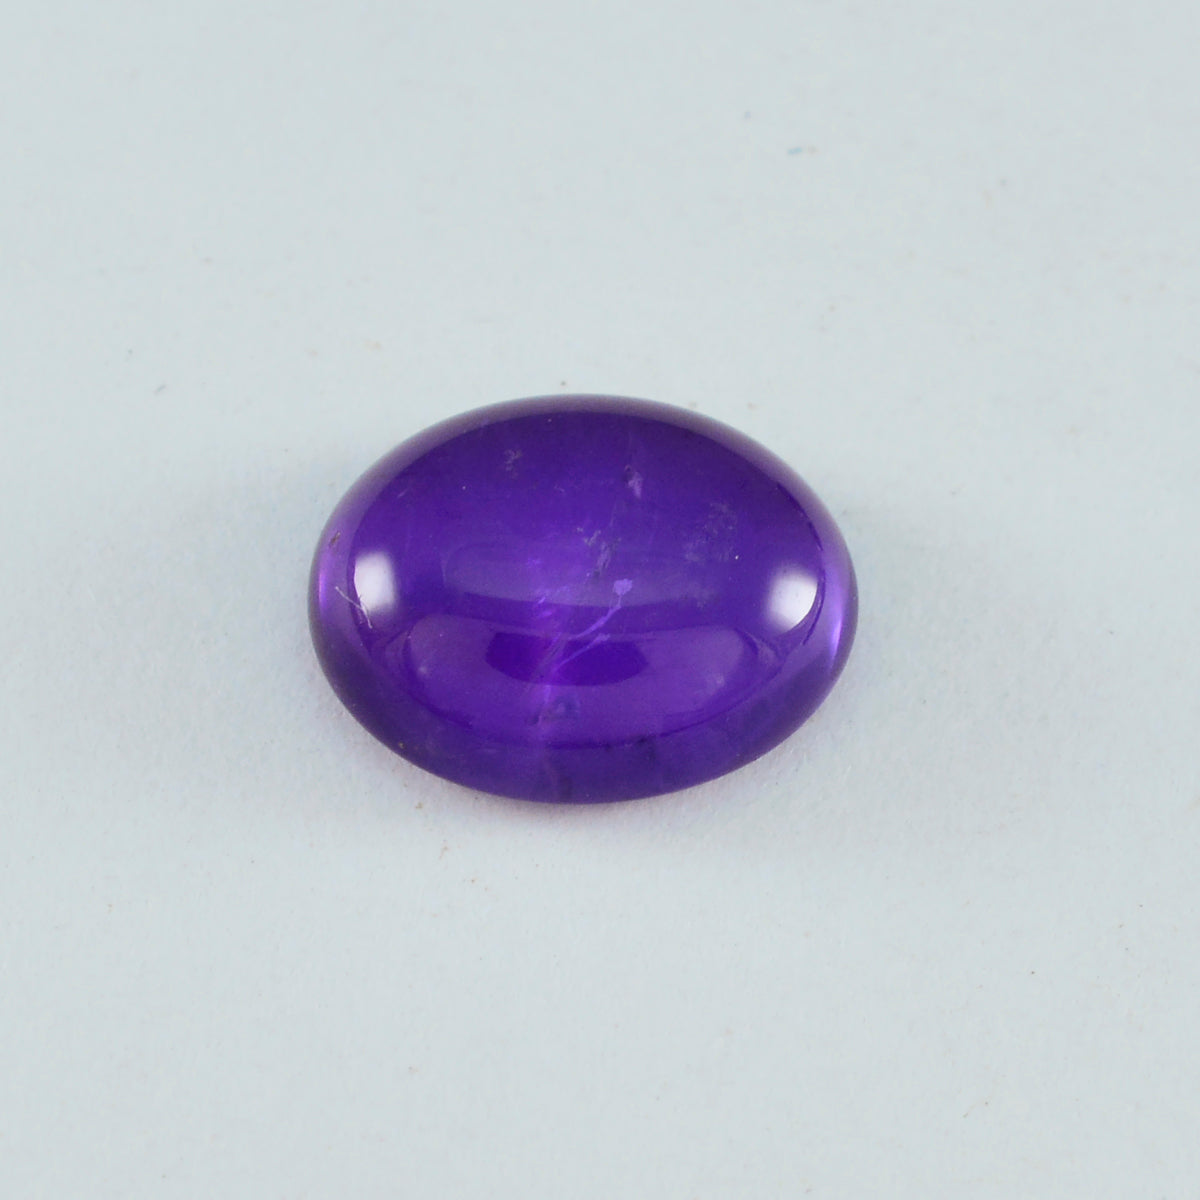 riyogems 1шт фиолетовый аметист кабошон 10х12 мм овальной формы красивые качественные камни